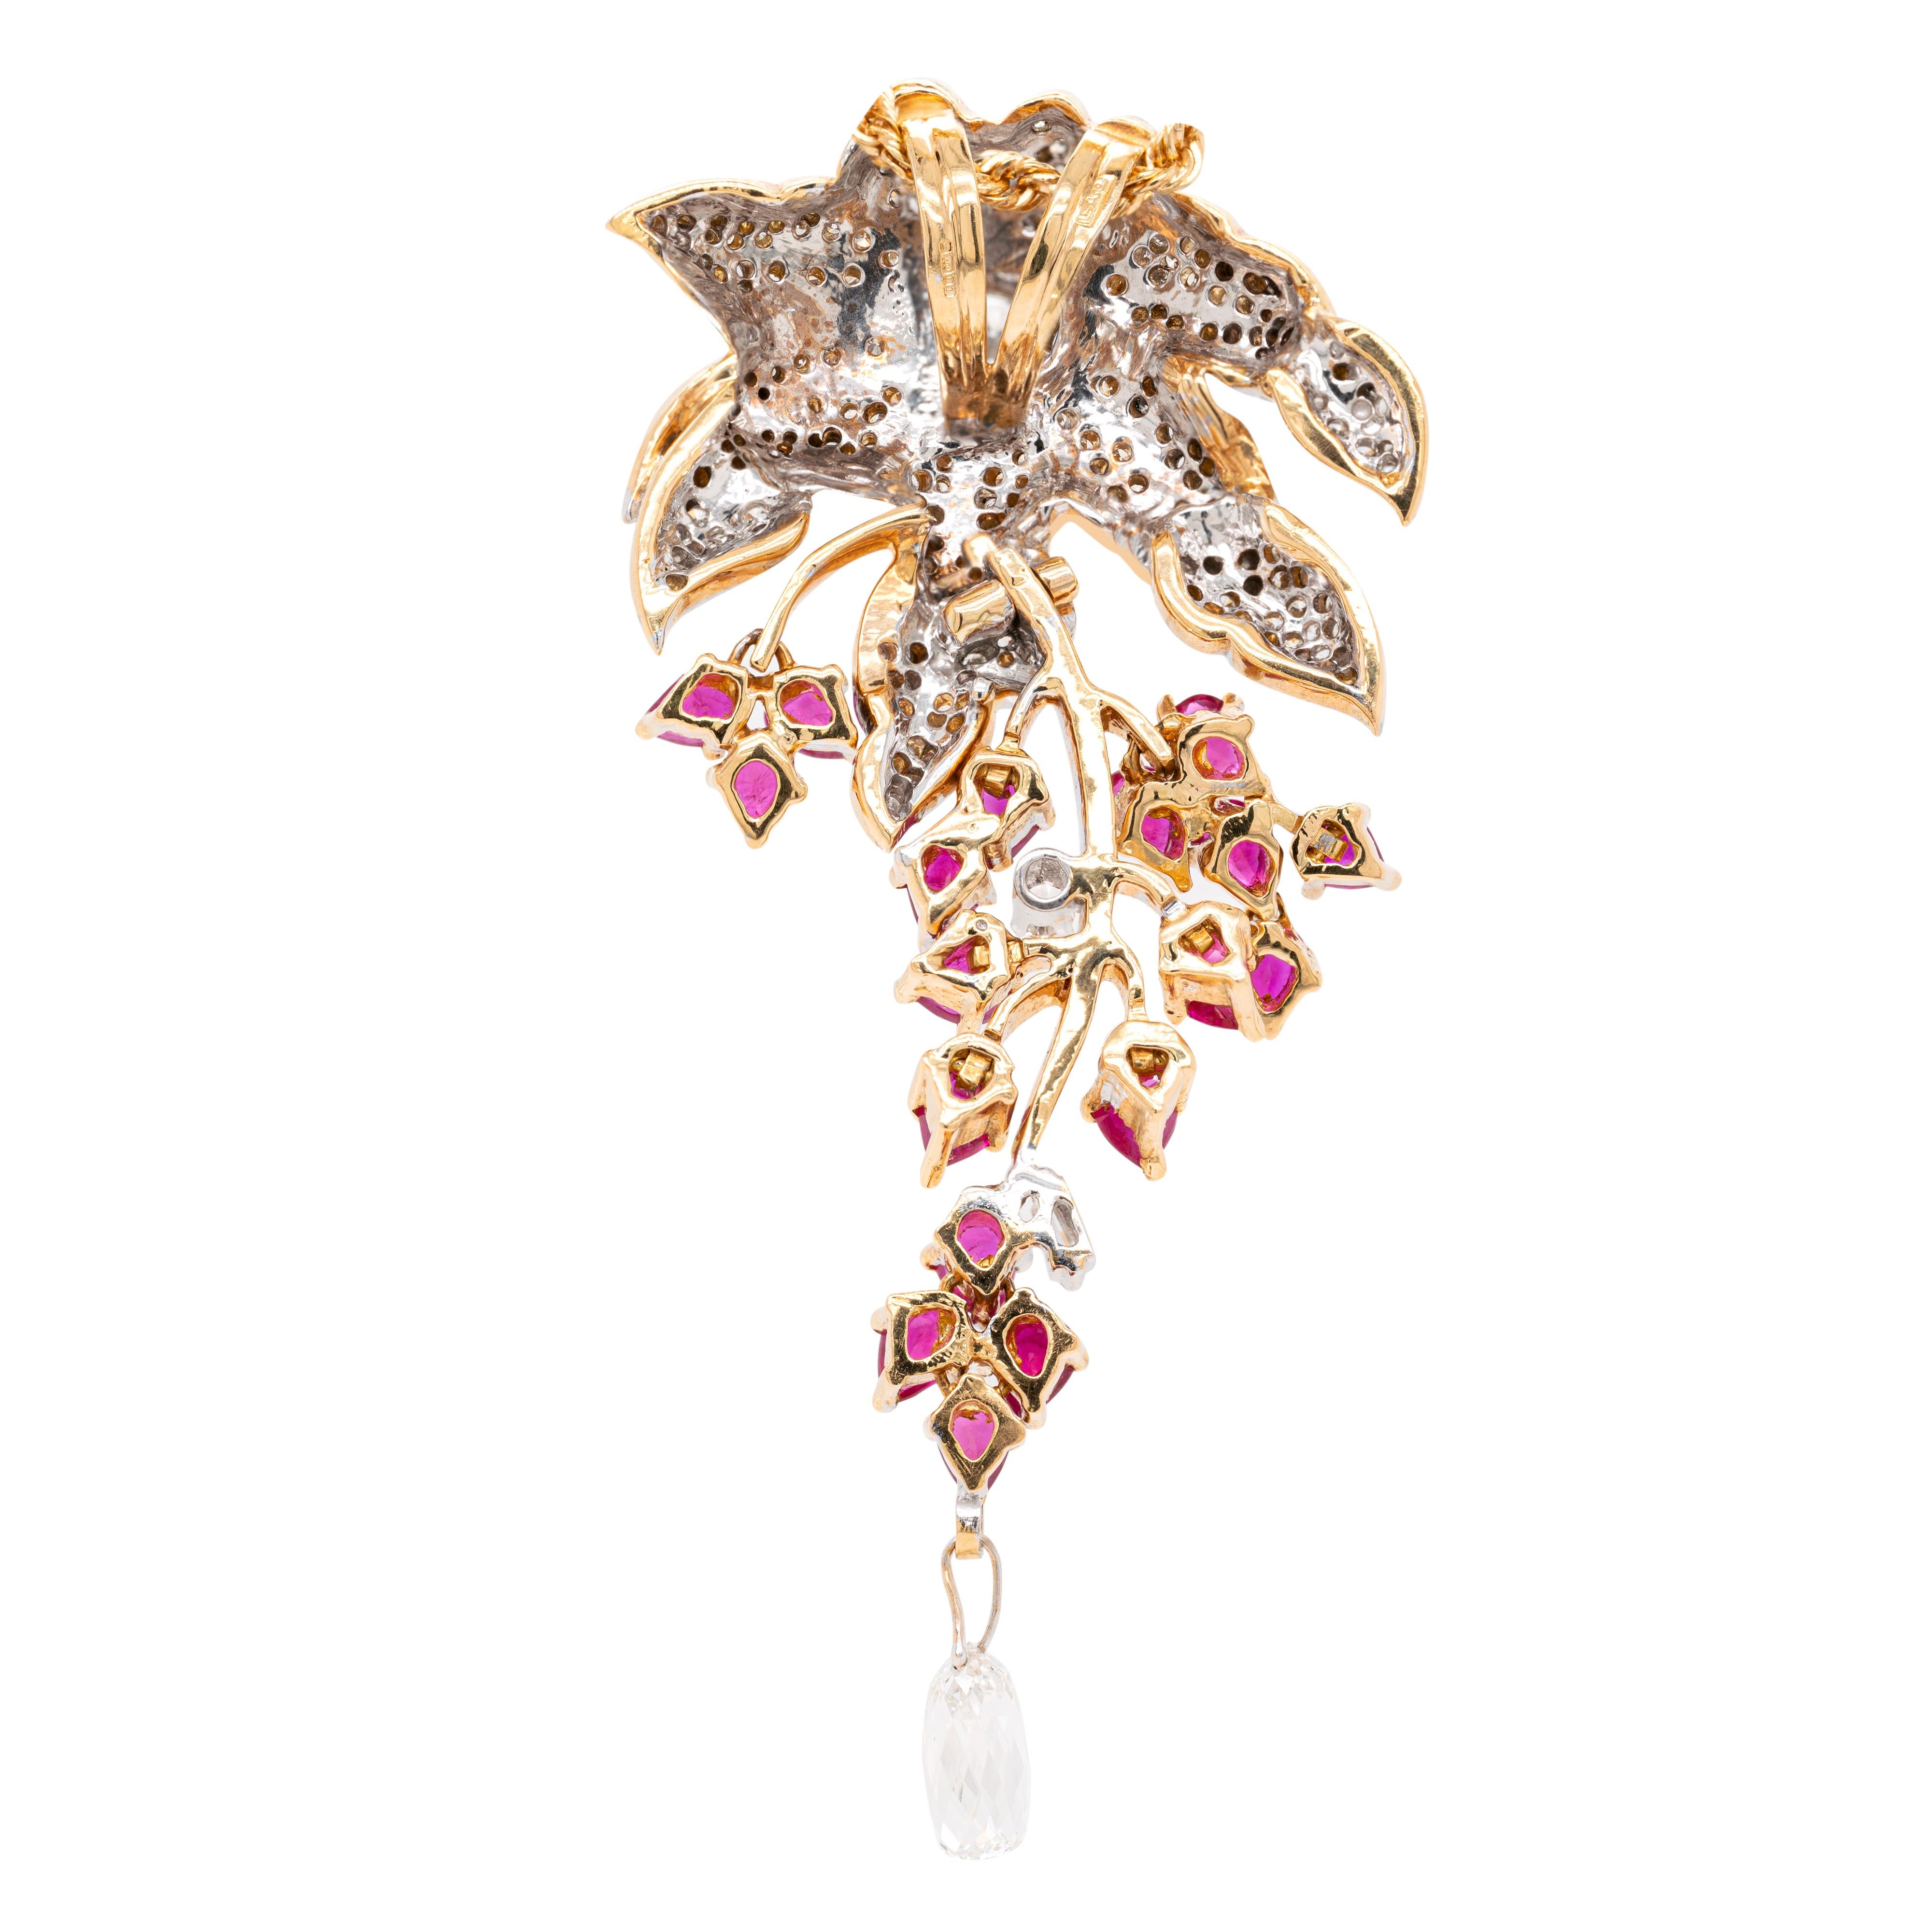 Ce pendentif sophistiqué présente un motif floral complexe en or blanc et jaune 18 carats. La pièce maîtresse de ce pendentif est une ravissante fleur dont le centre est orné d'une grappe de diamants et dont les pétales sont incrustés de diamants